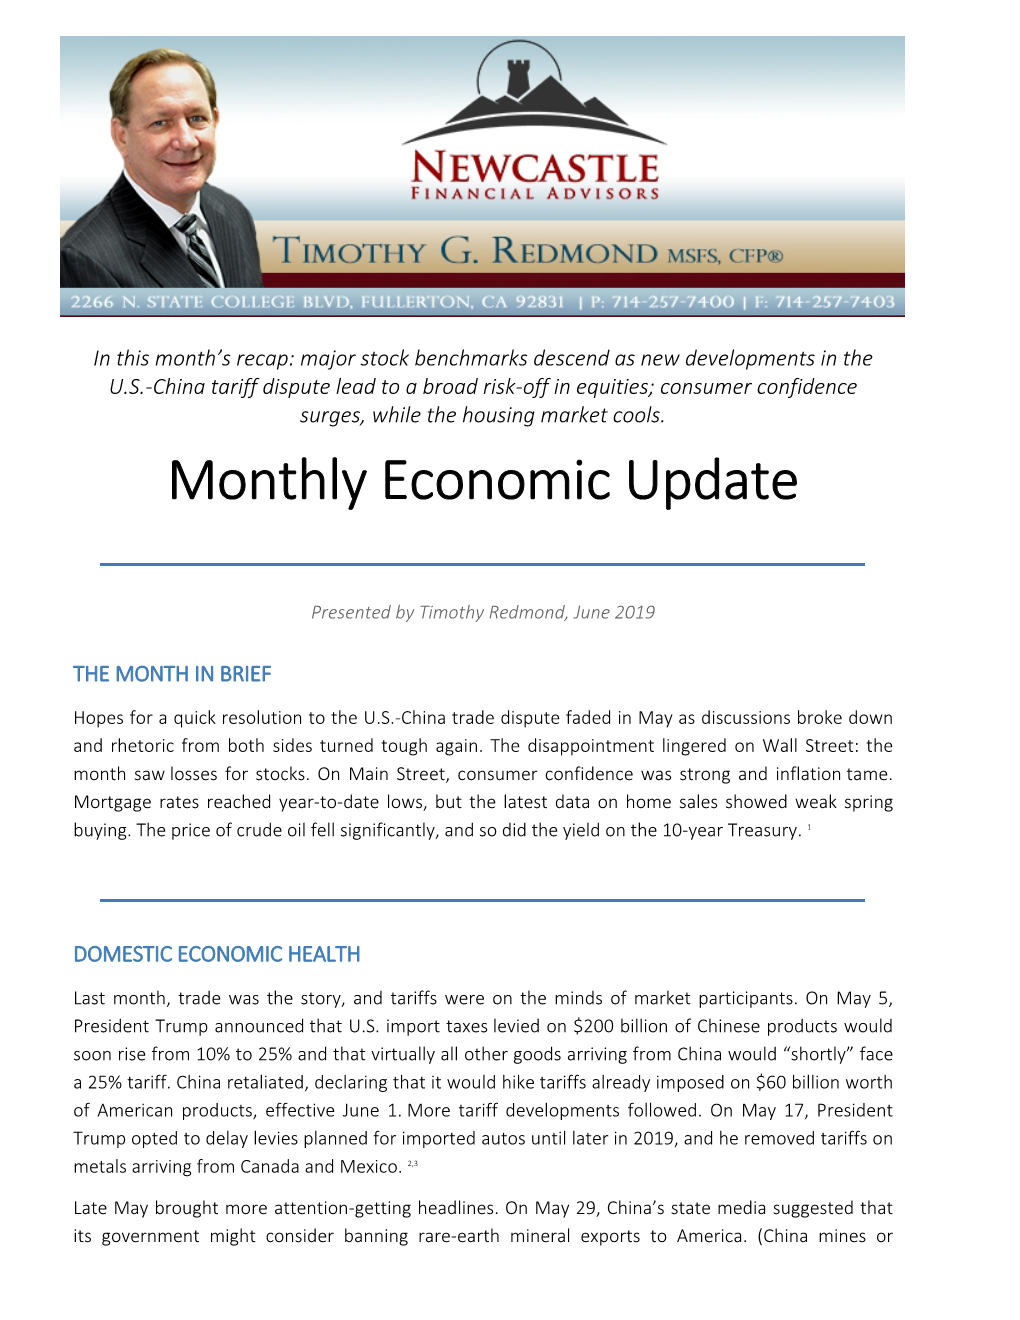 Monthly Economic Update